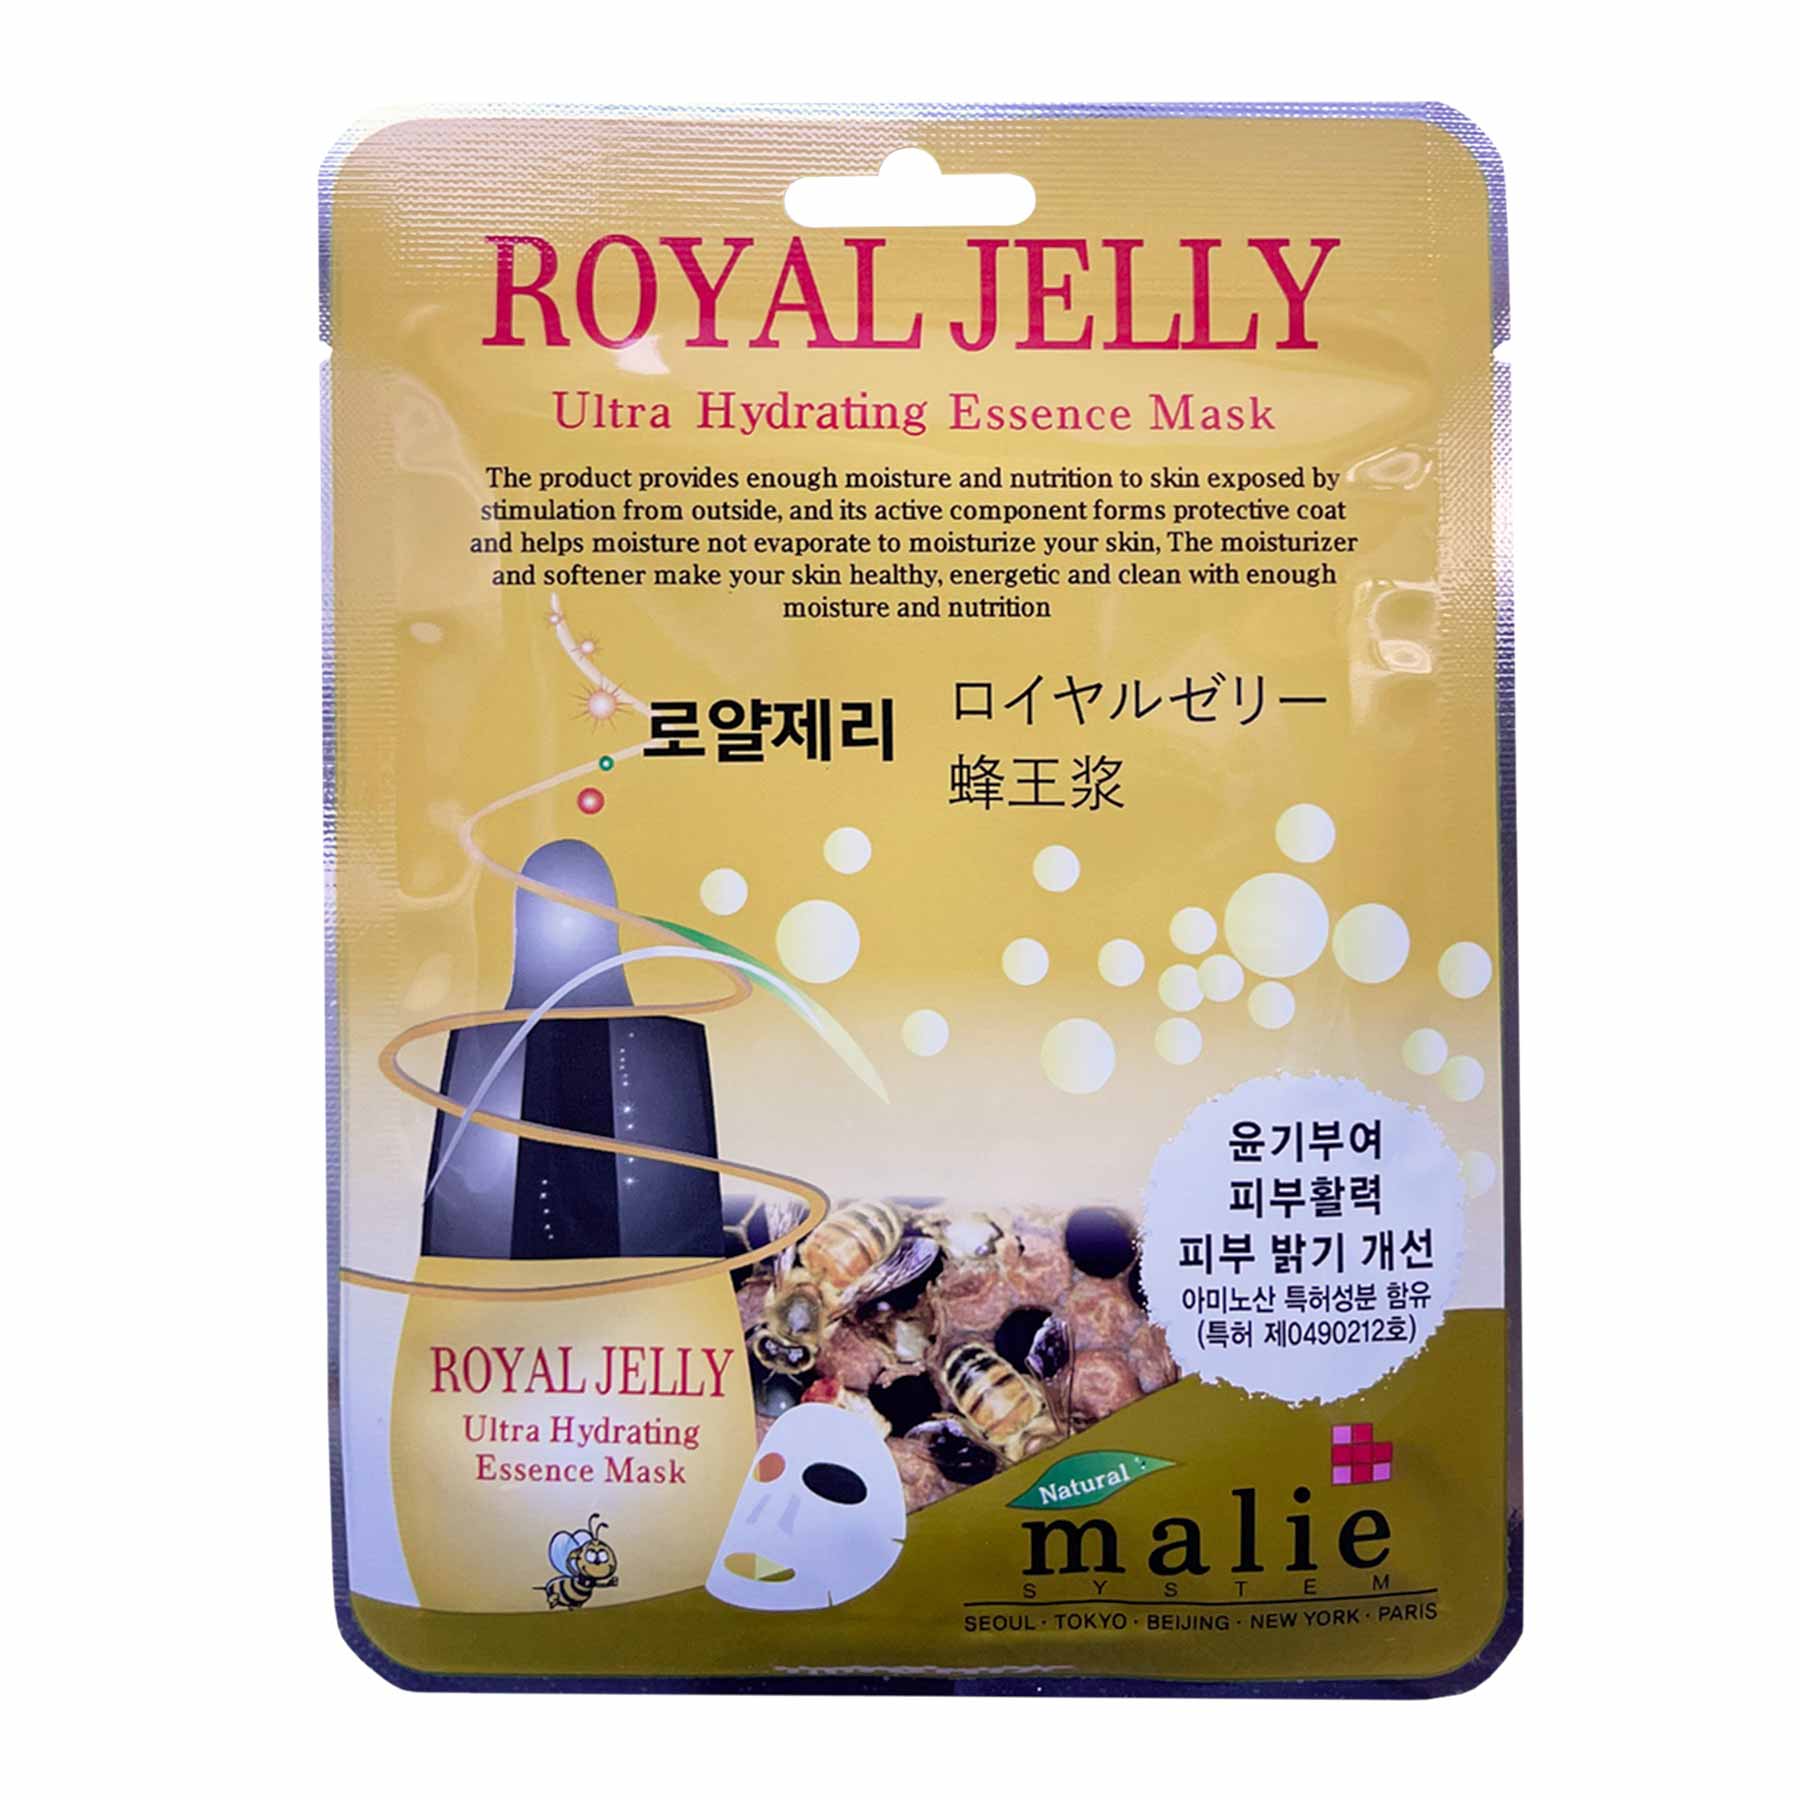 Malie Royal Jelly Ultra Hydrating Essence Mask